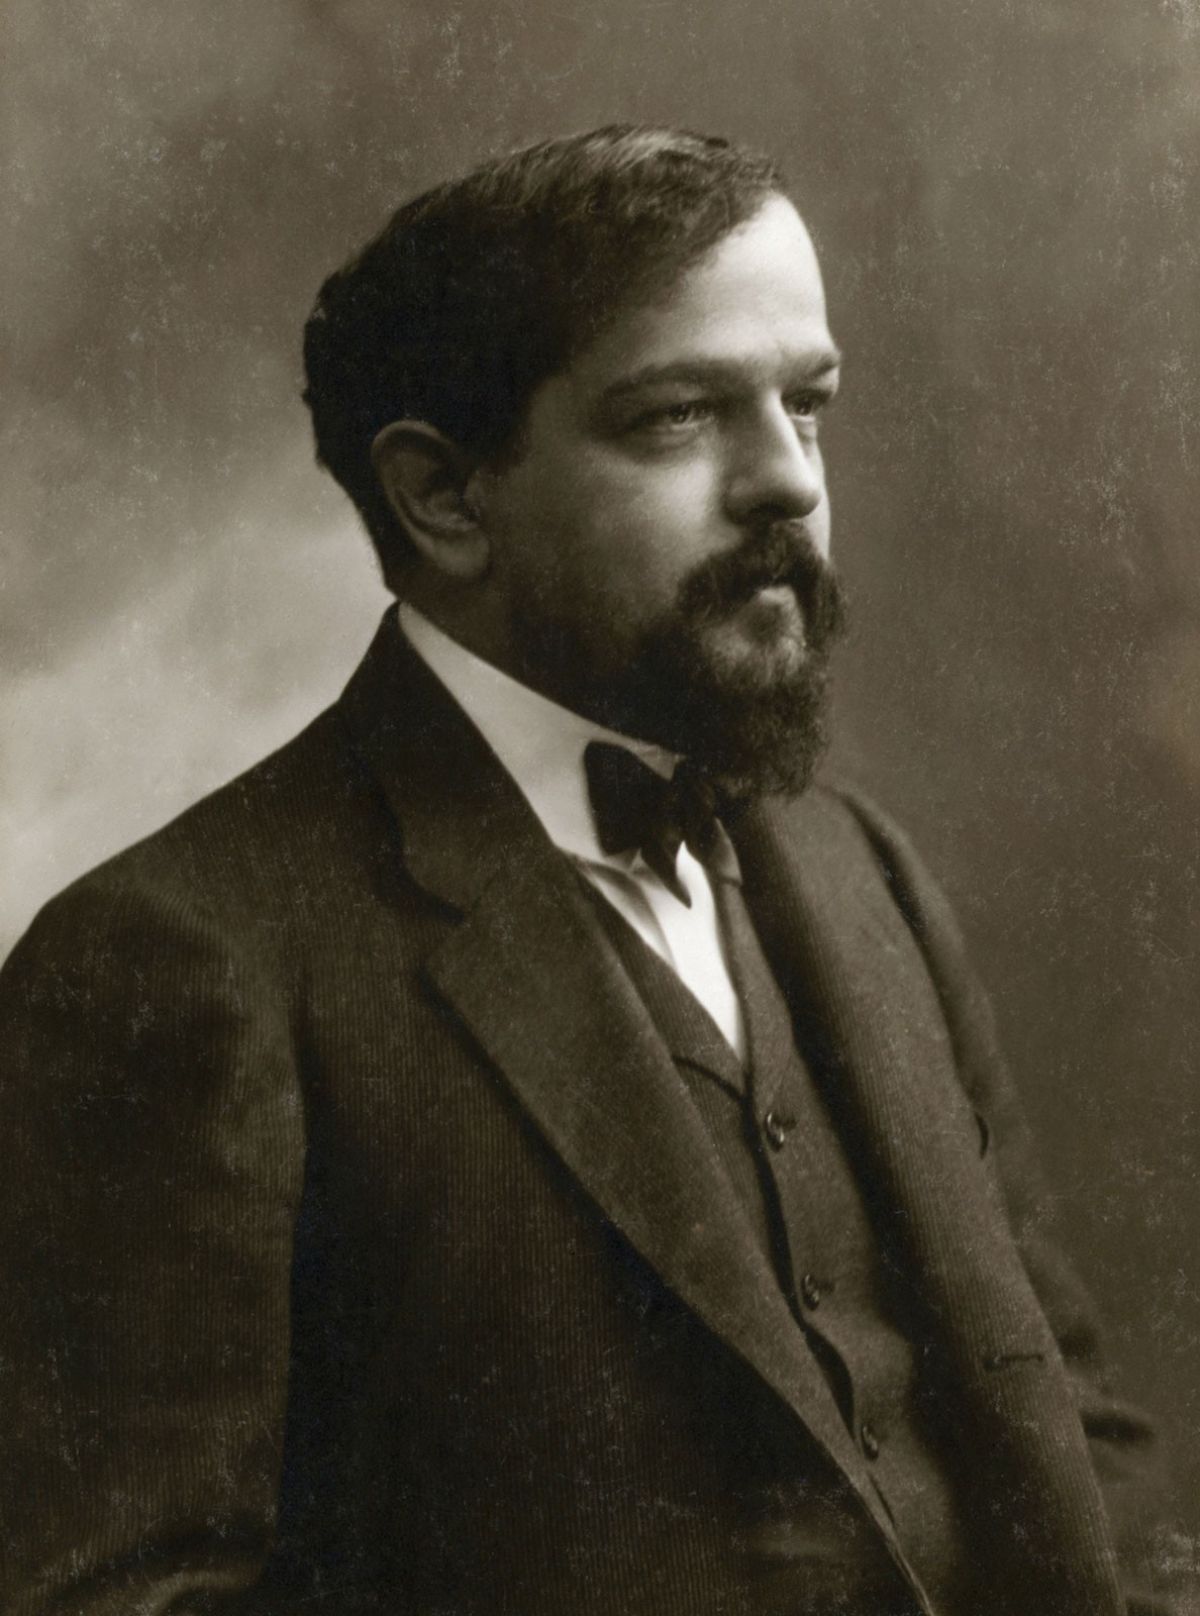 Claude Debussy, composer